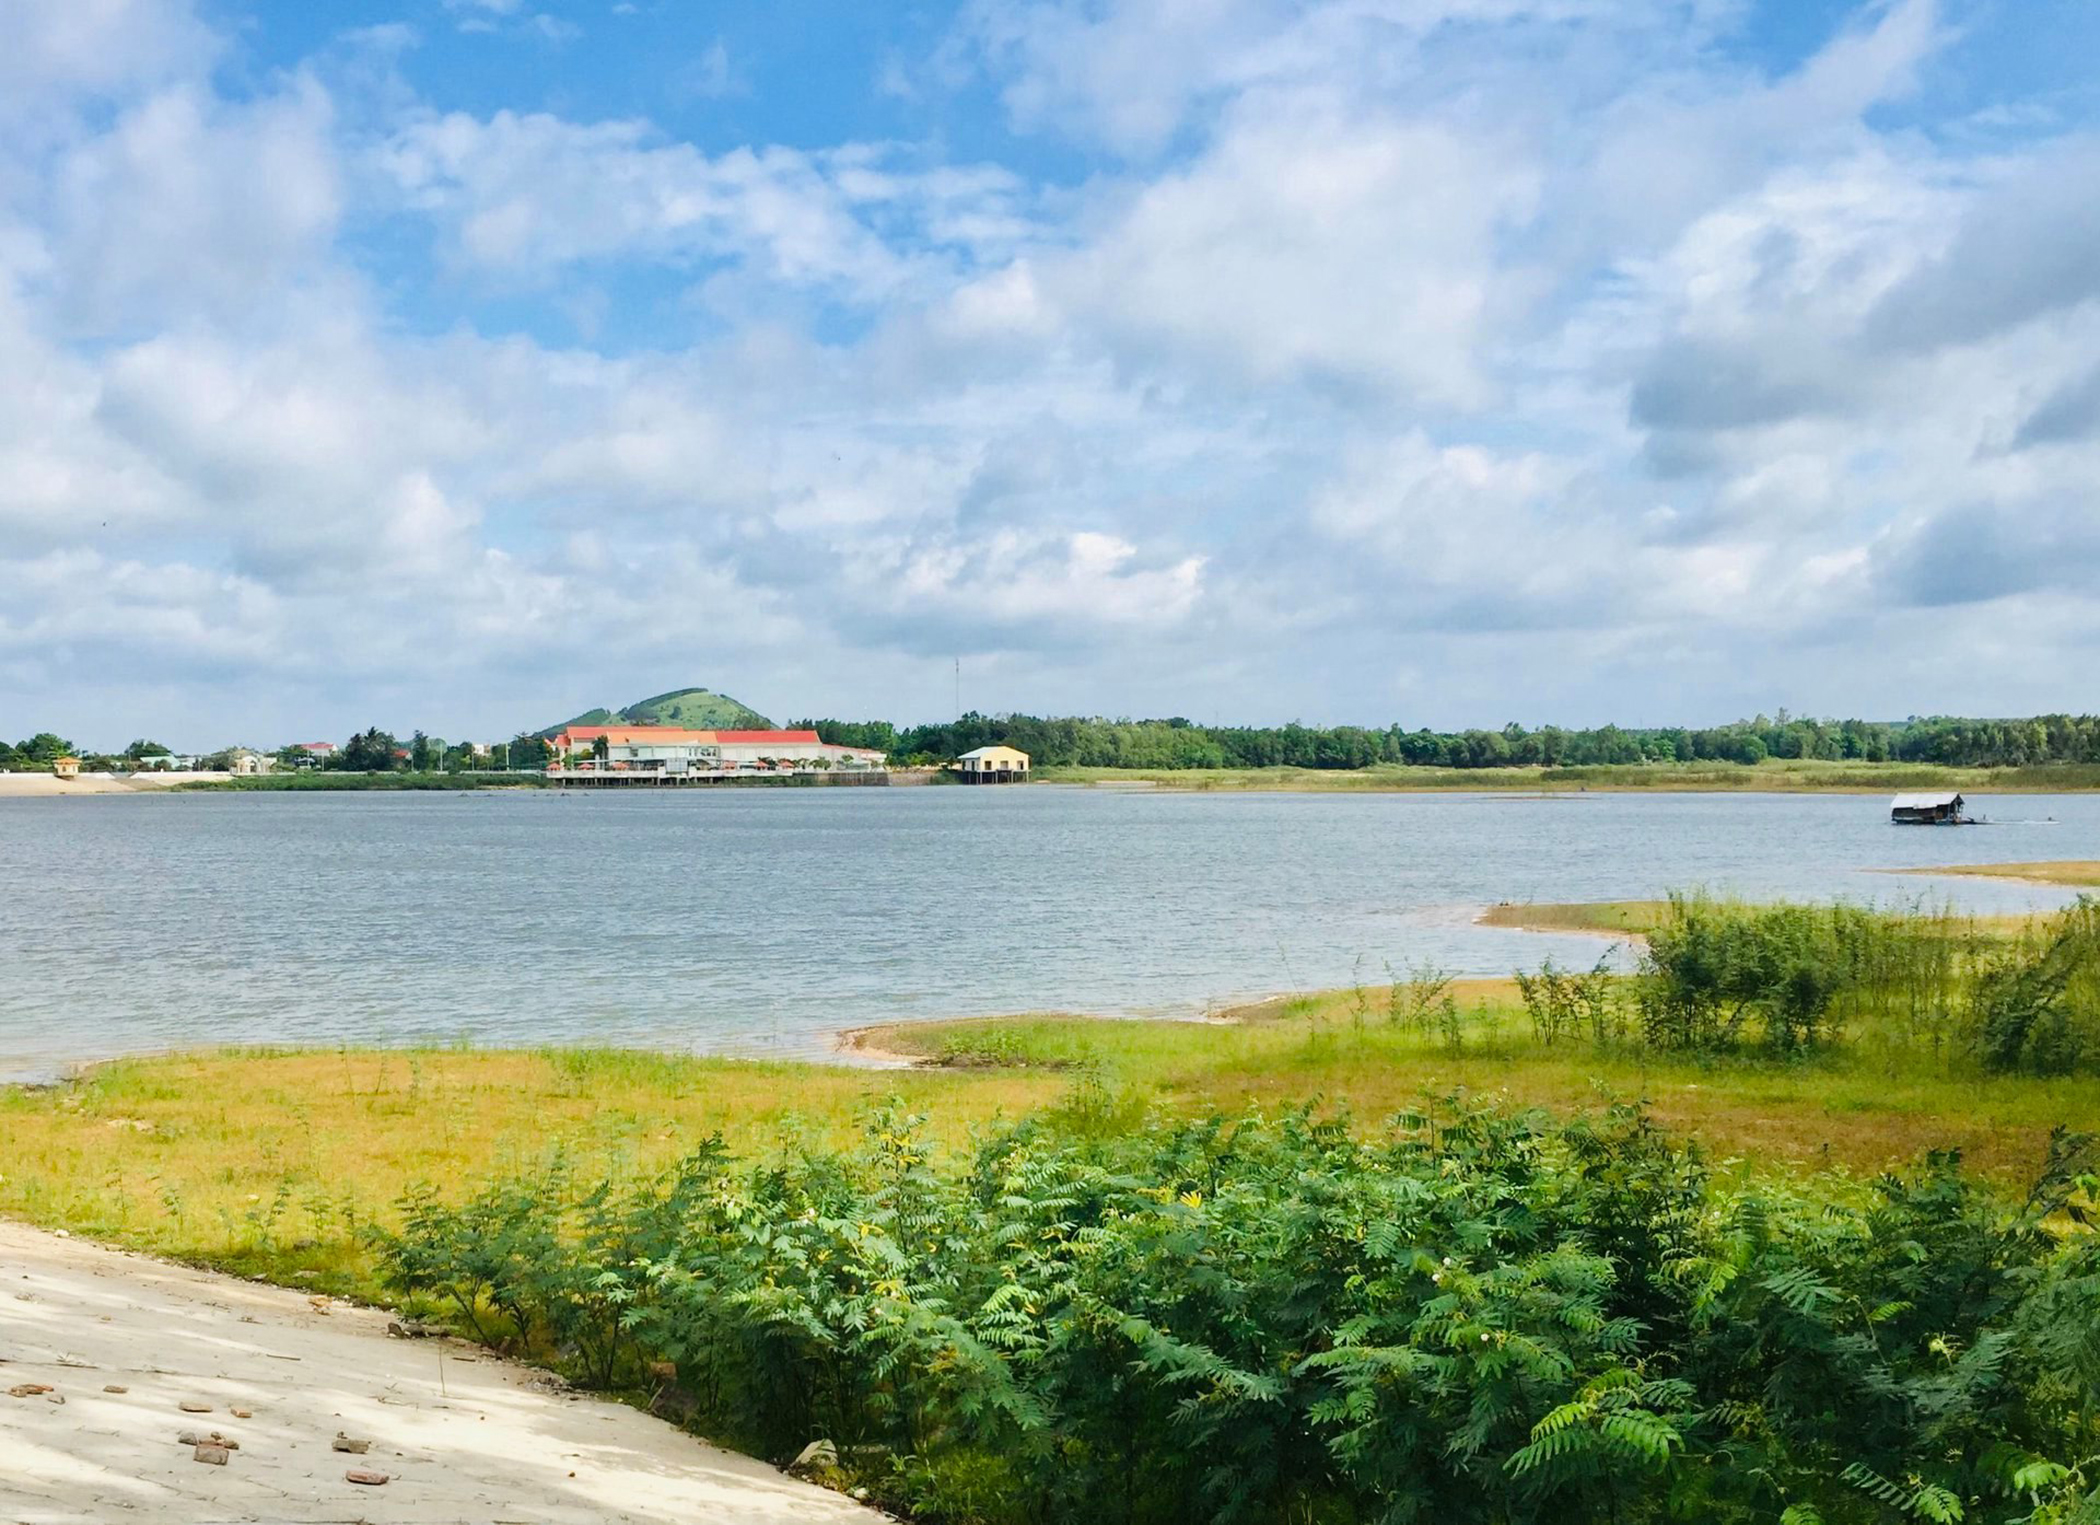 Hồ Xuyên Mộc hiện đang cung cấp hơn 4.000m3 nước sinh hoạt mỗi ngày cho người dân thị trấn Phước Bửu, Phước Thuận và Phước Tân.